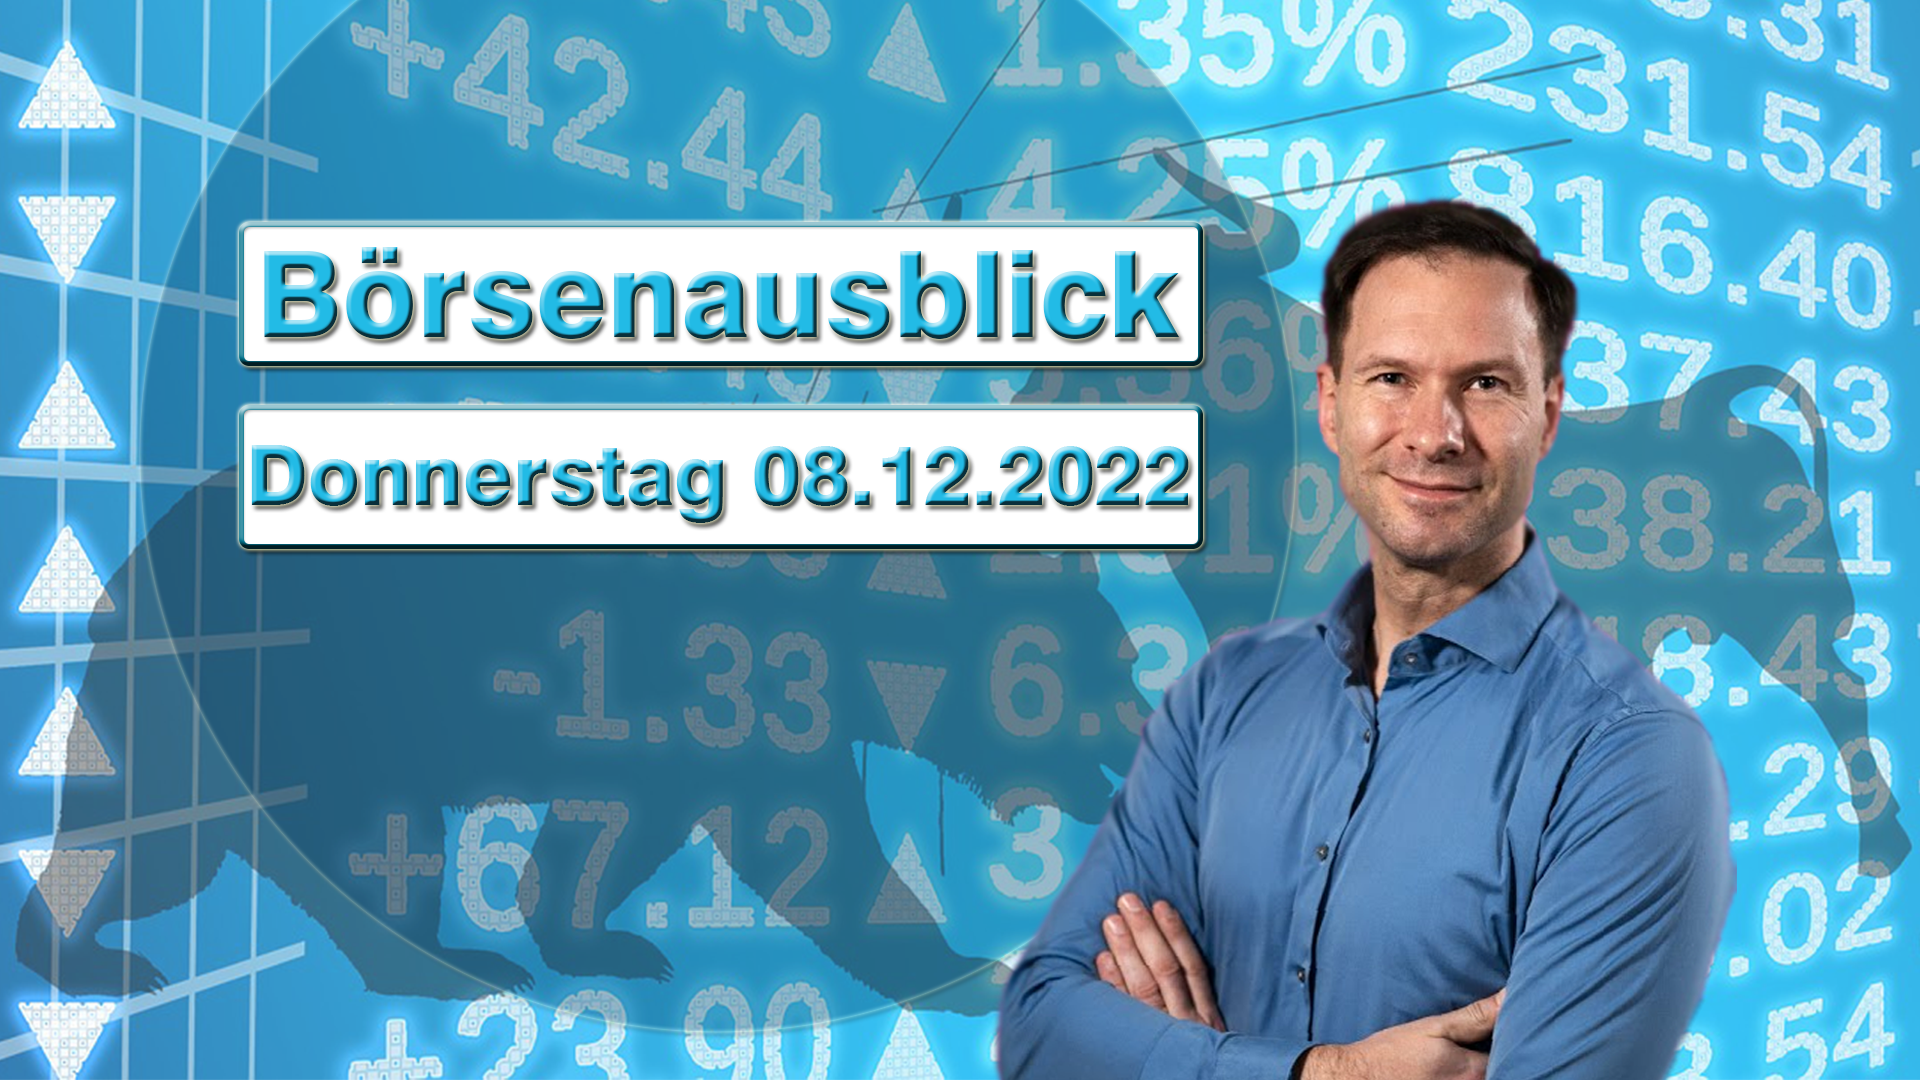 20221208_AndreasBernstein_Börsenausblick